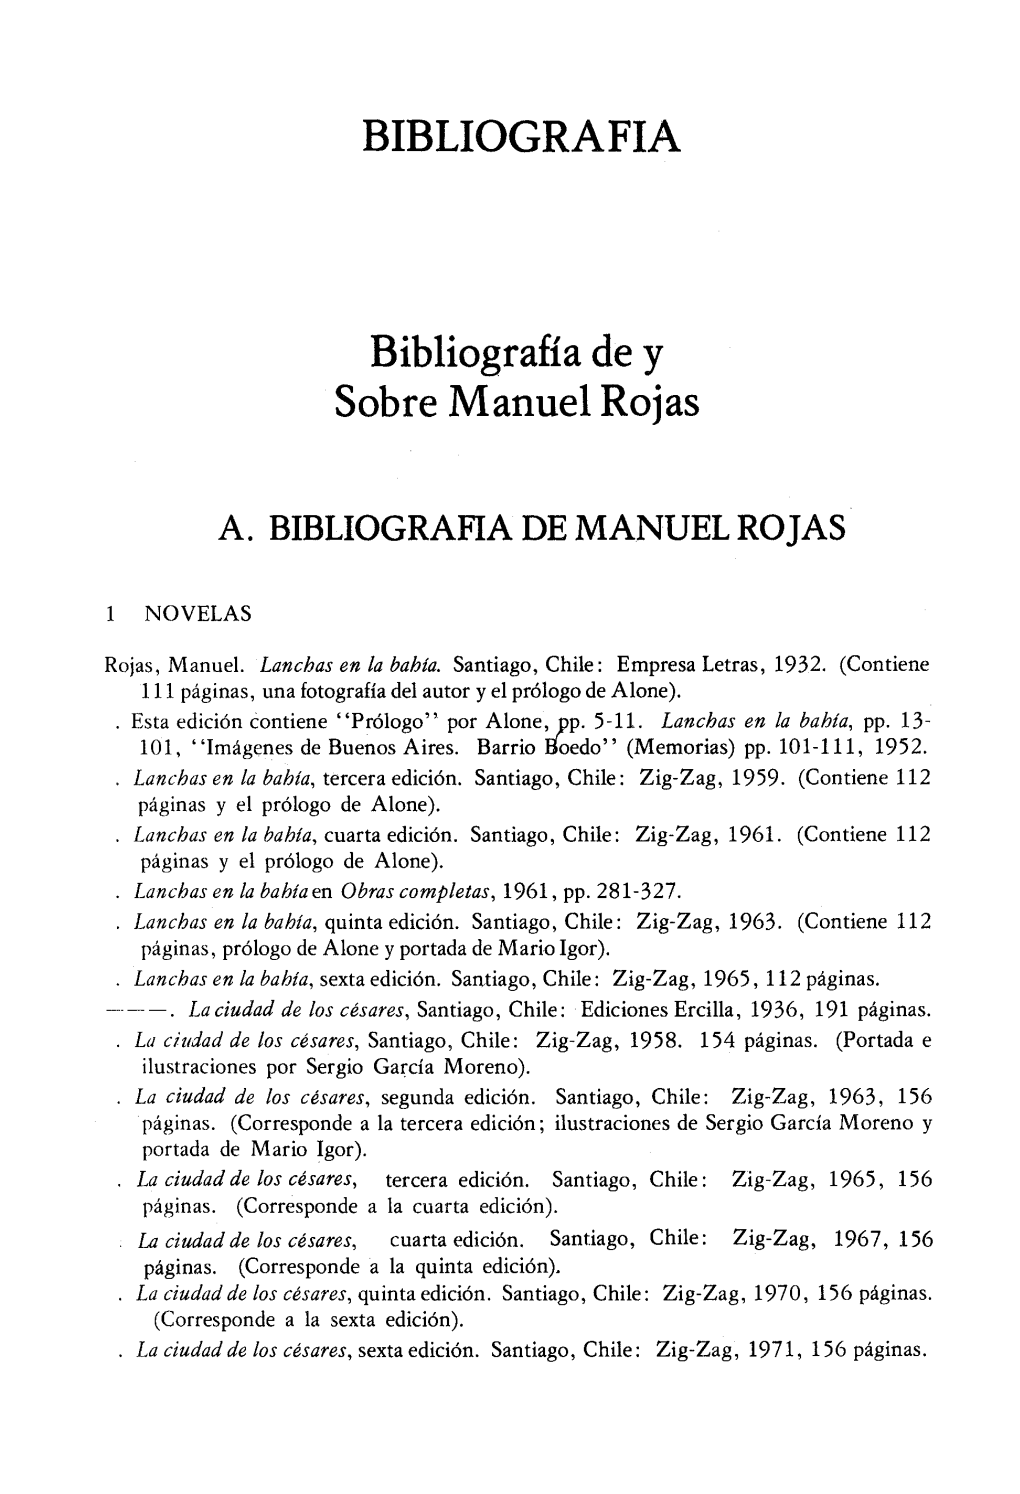 A. Bibliografia De Manuel Rojas